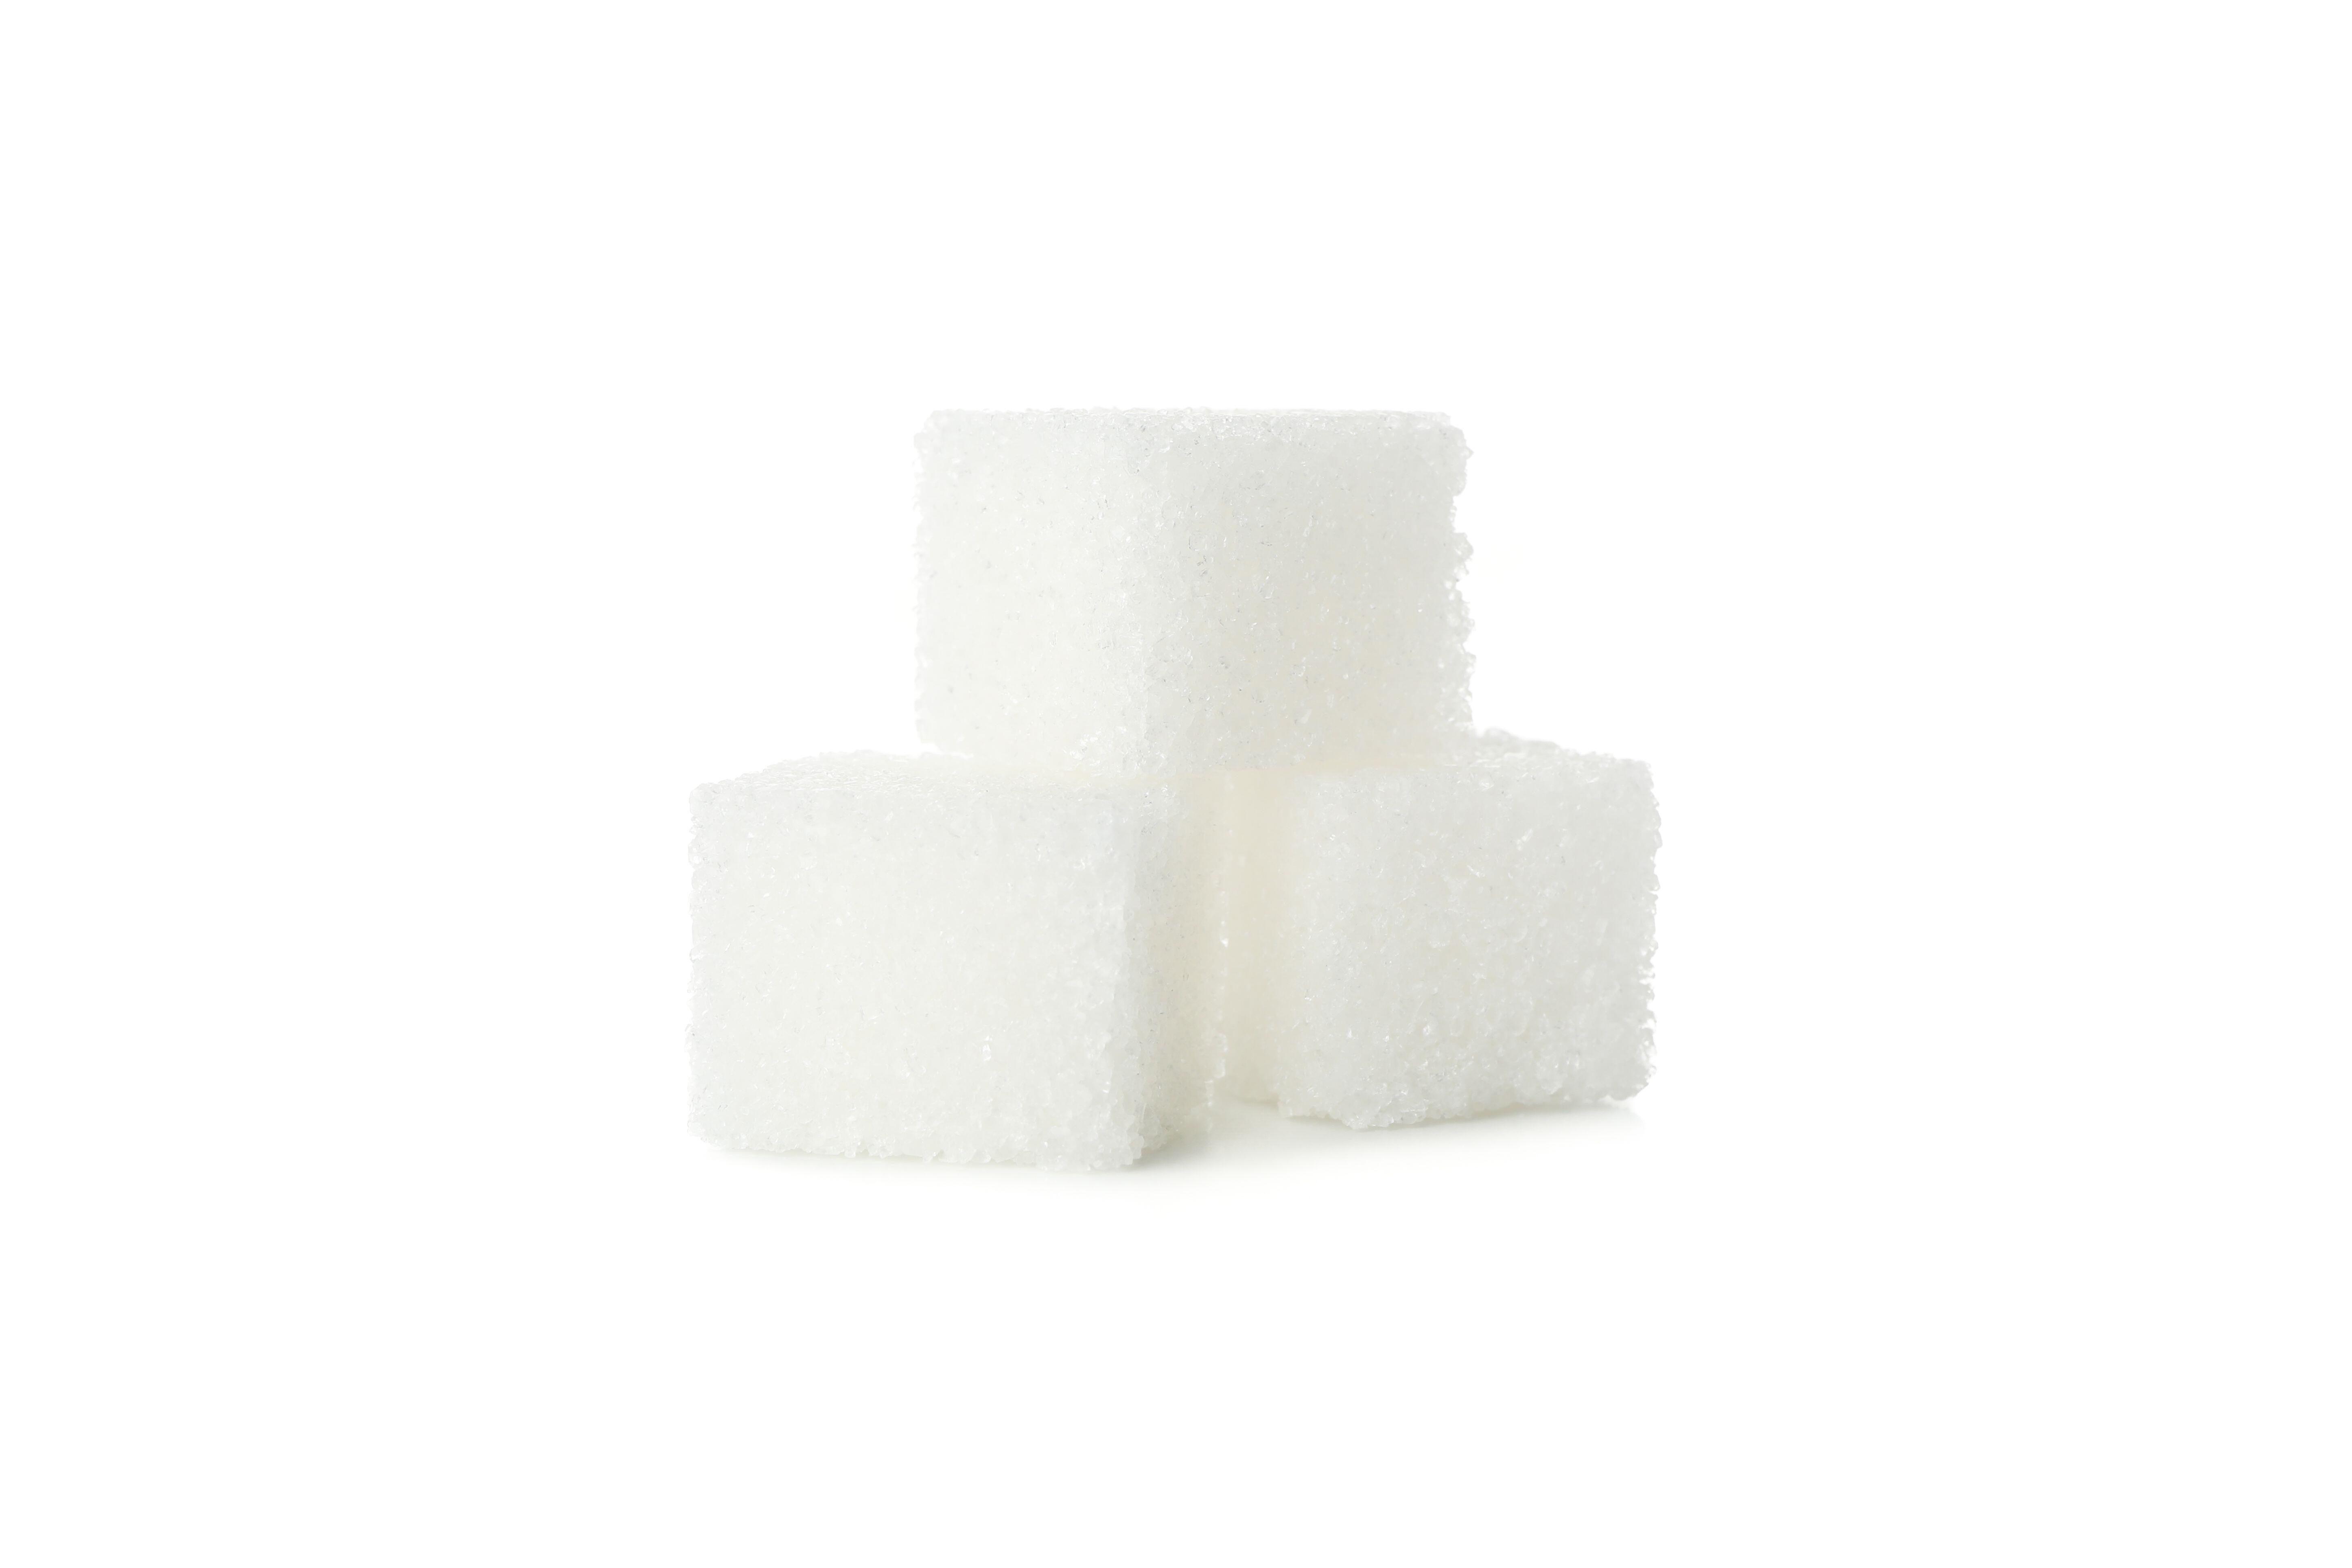 Eine erhöhte Zuckeraufnahme führt nicht automatisch zu Entzündungen